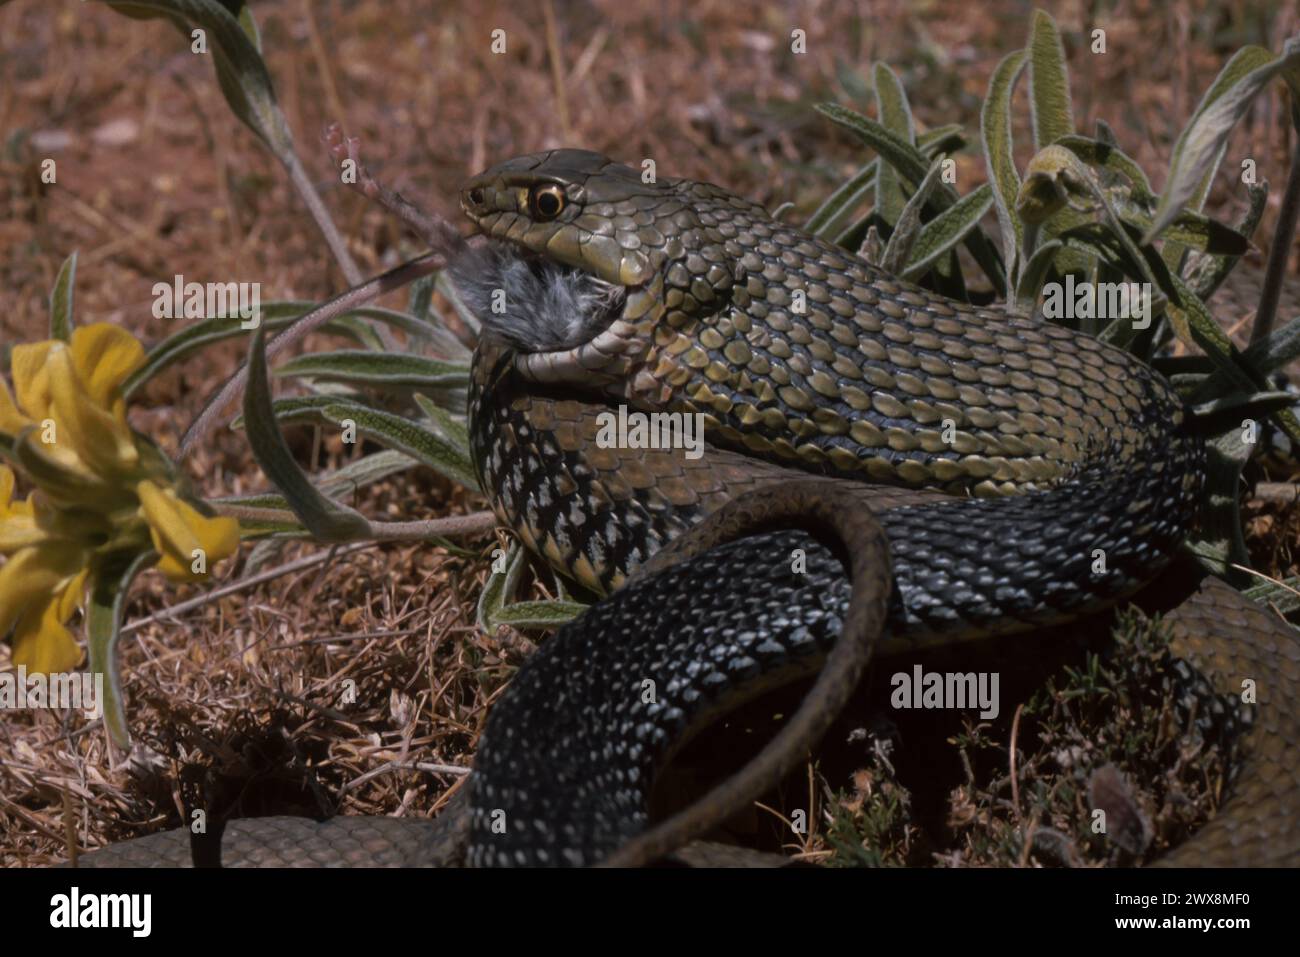 Montpellier snake (Malpolon monspessulanus) eating a rodent Stock Photo